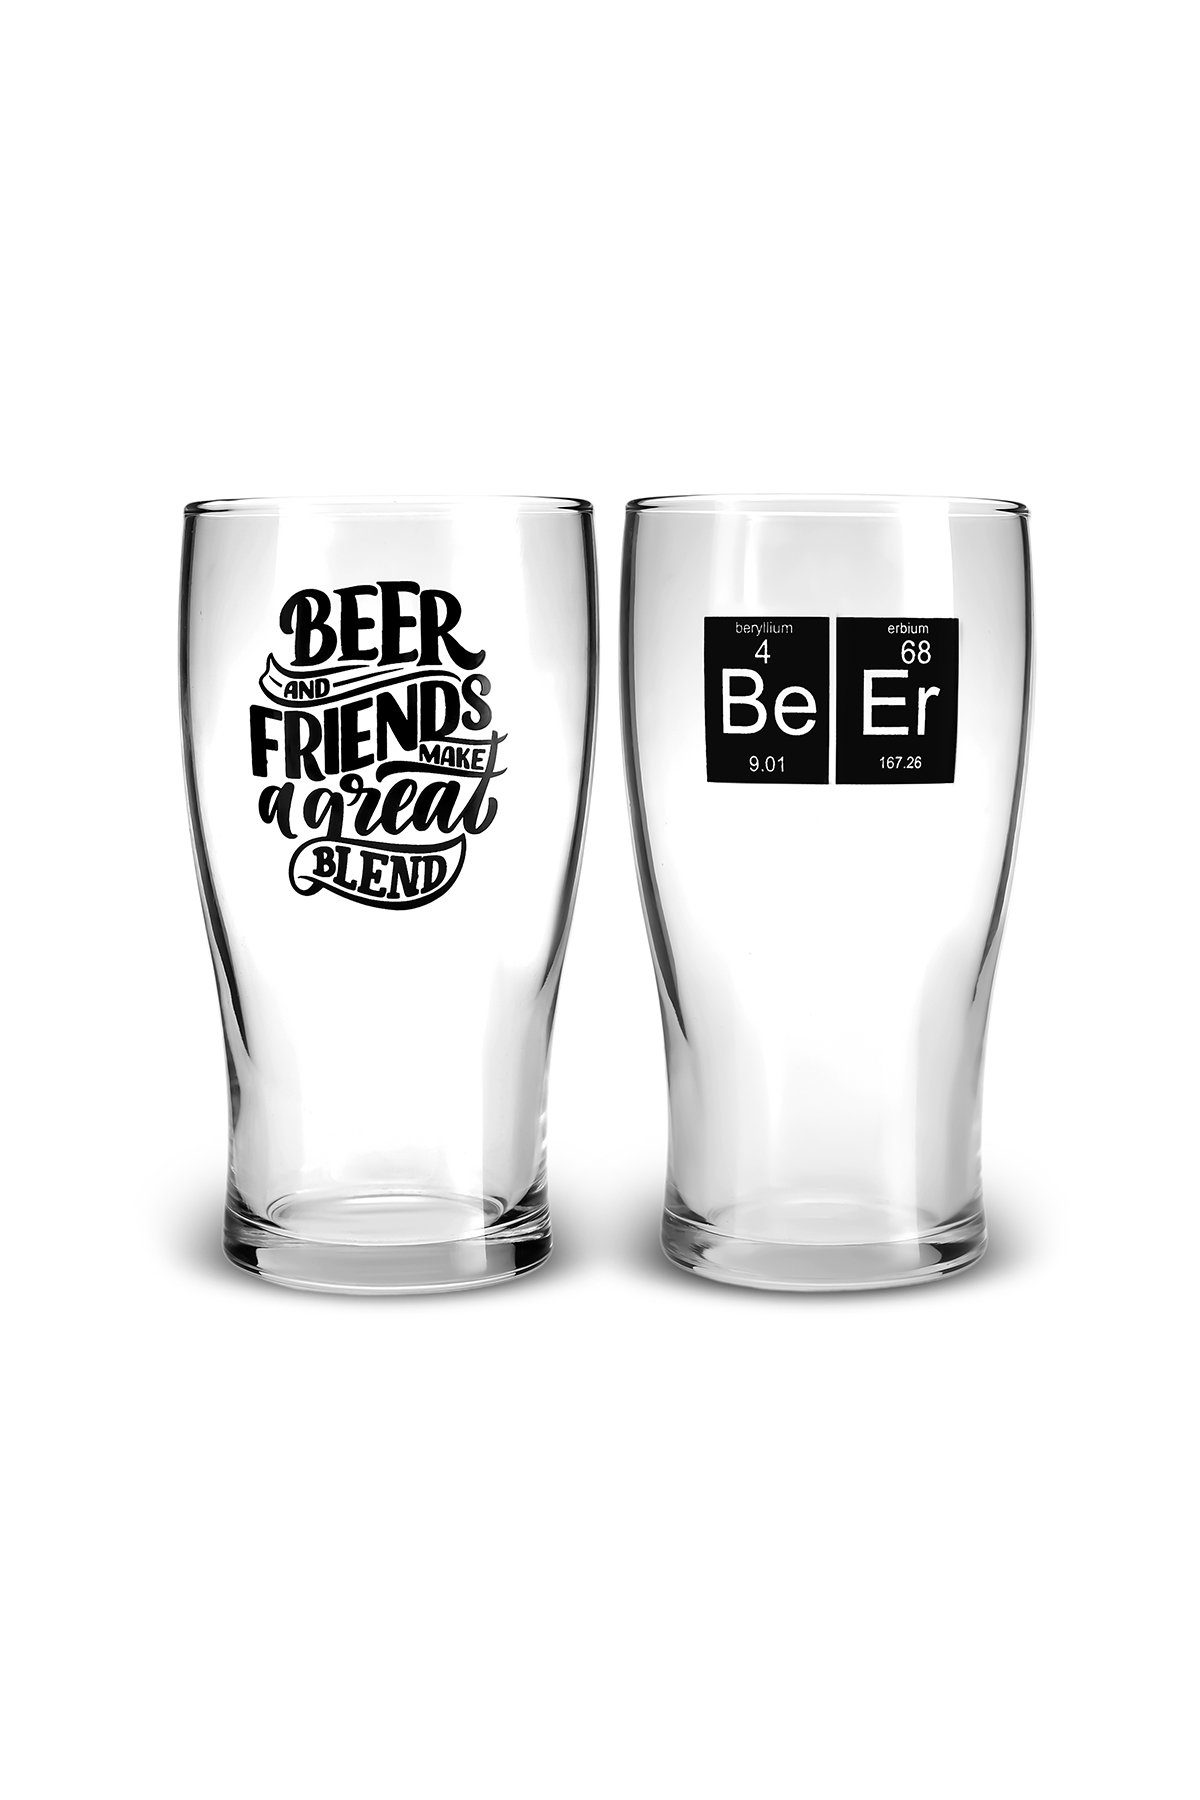 454ml Personen, für Beerbecher Glas, Bierglas-set Karaca Glas 2